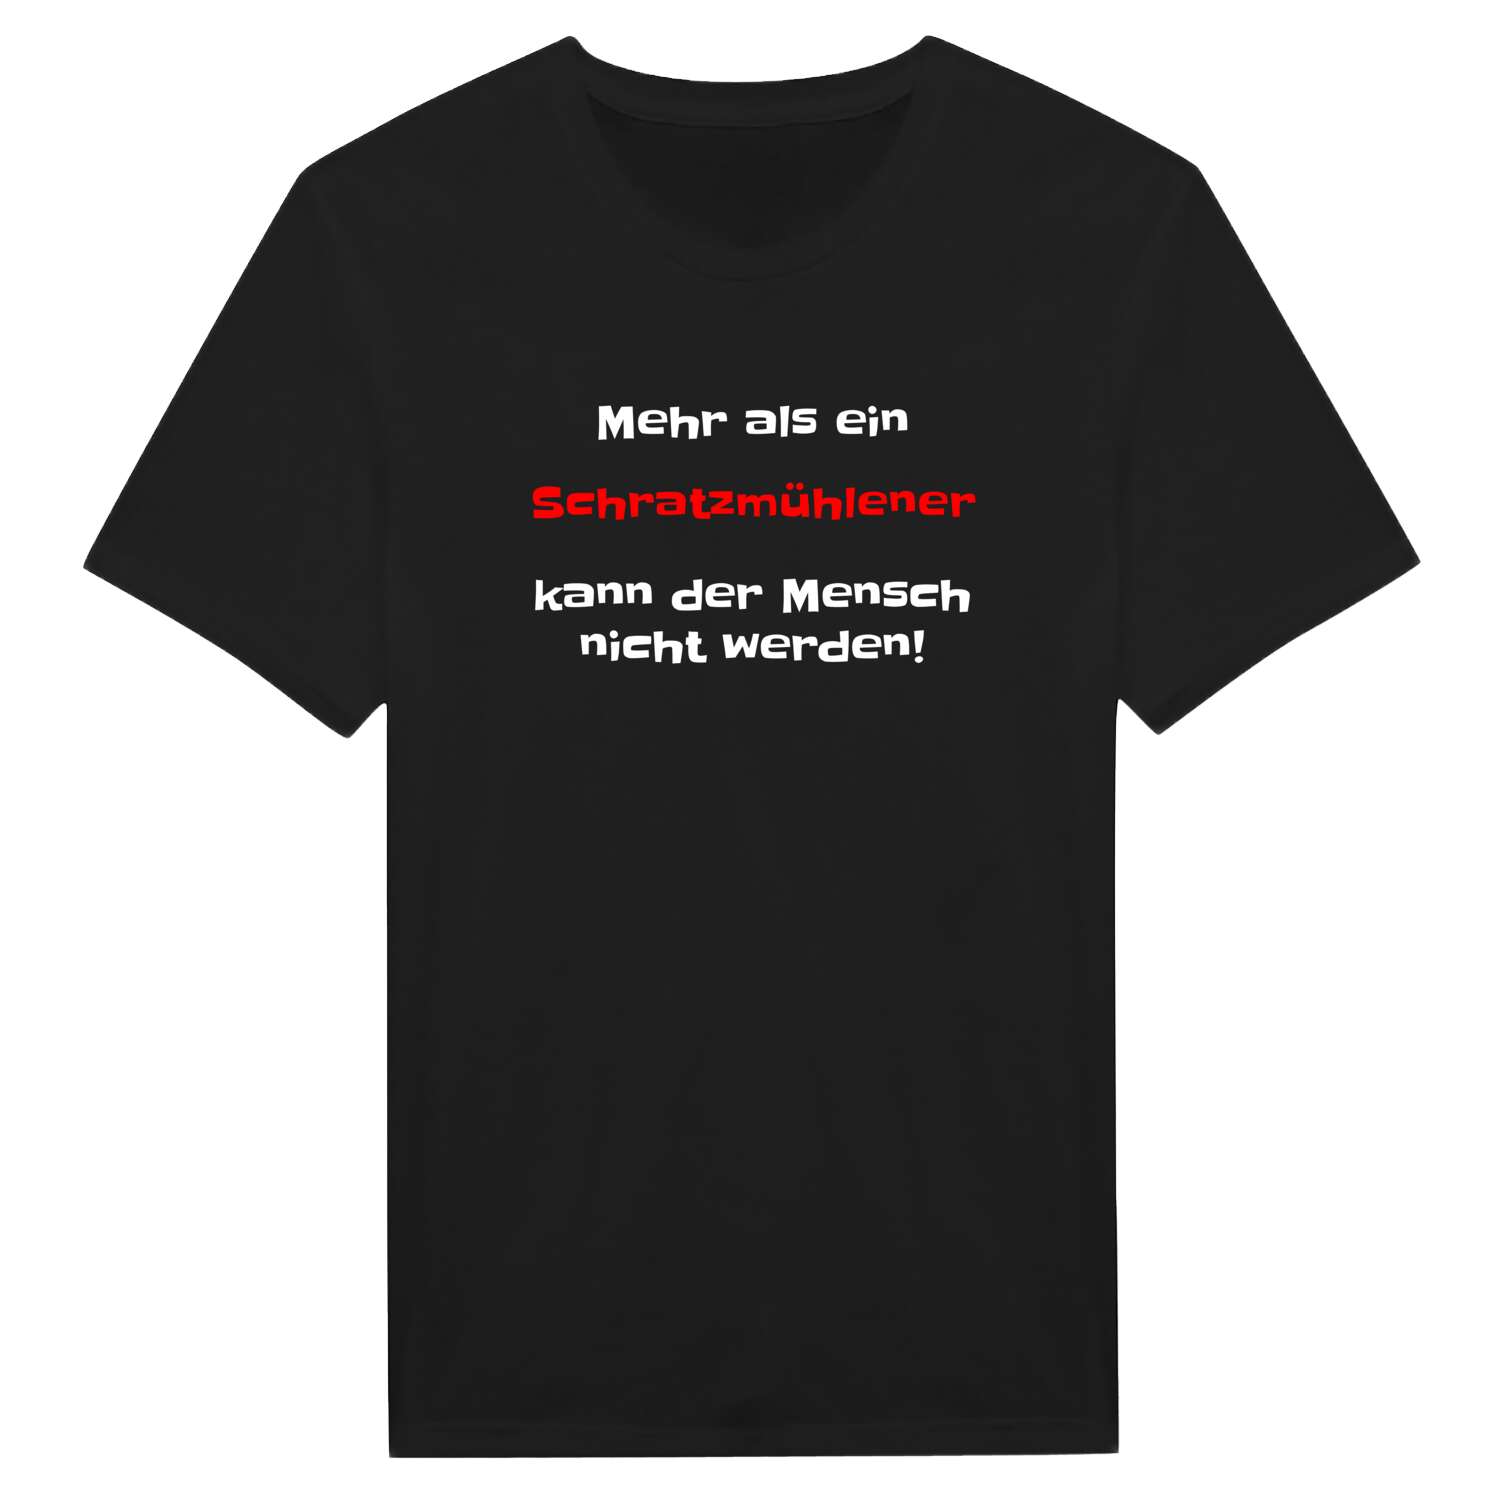 Schratzmühle T-Shirt »Mehr als ein«